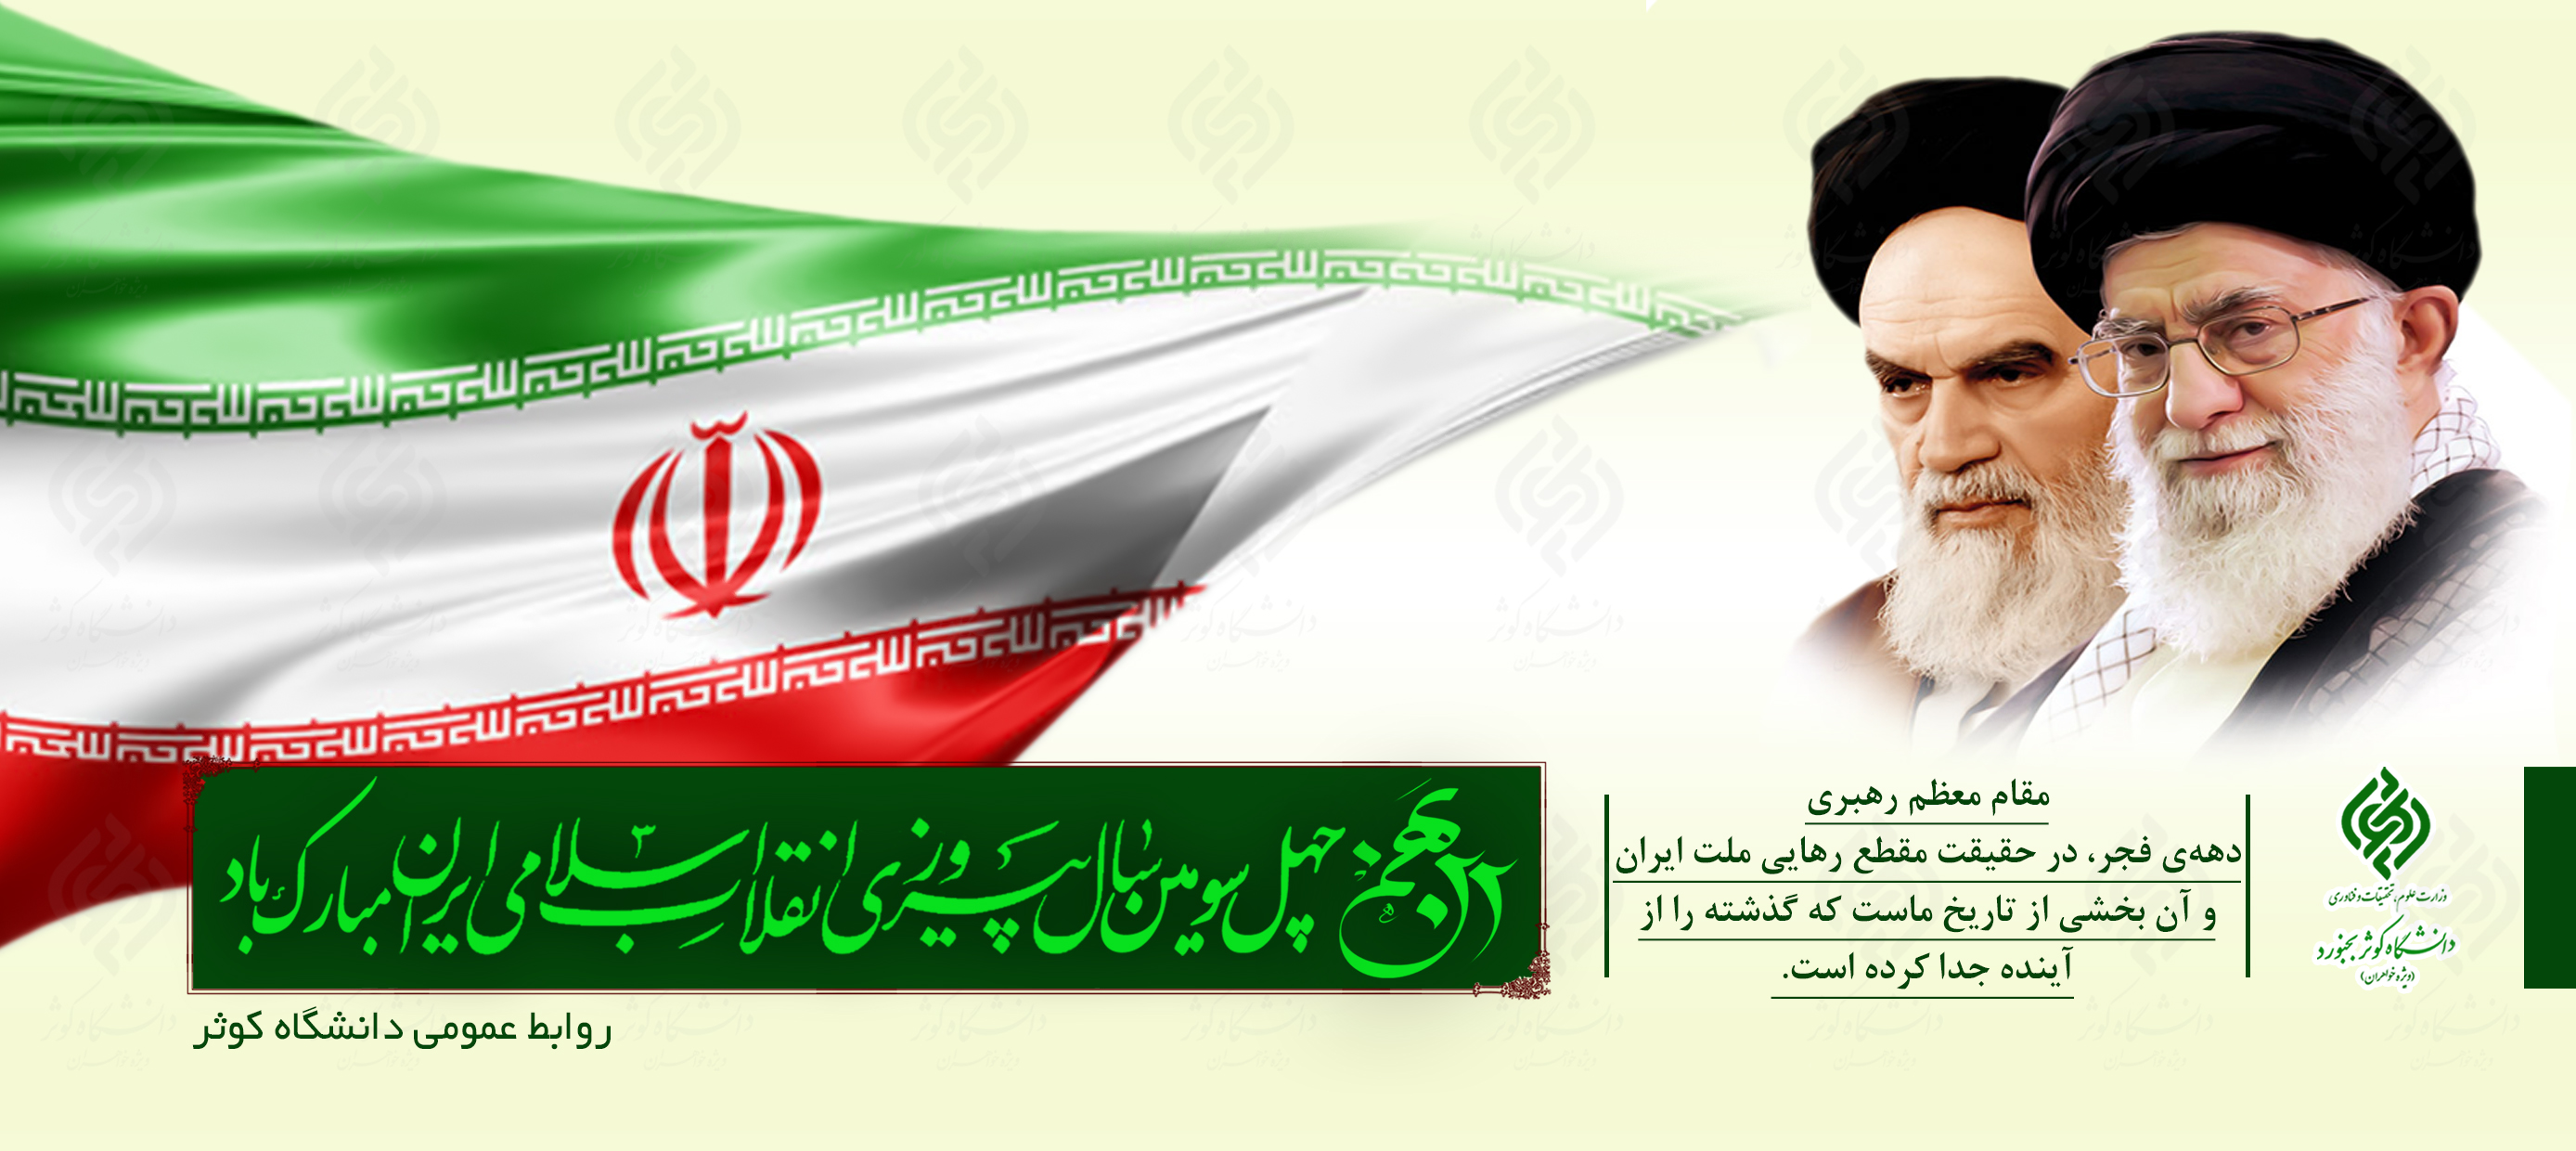 22 بهمن چهل سومین سال پیروزی انقلاب اسلامی ایران مبارک باد